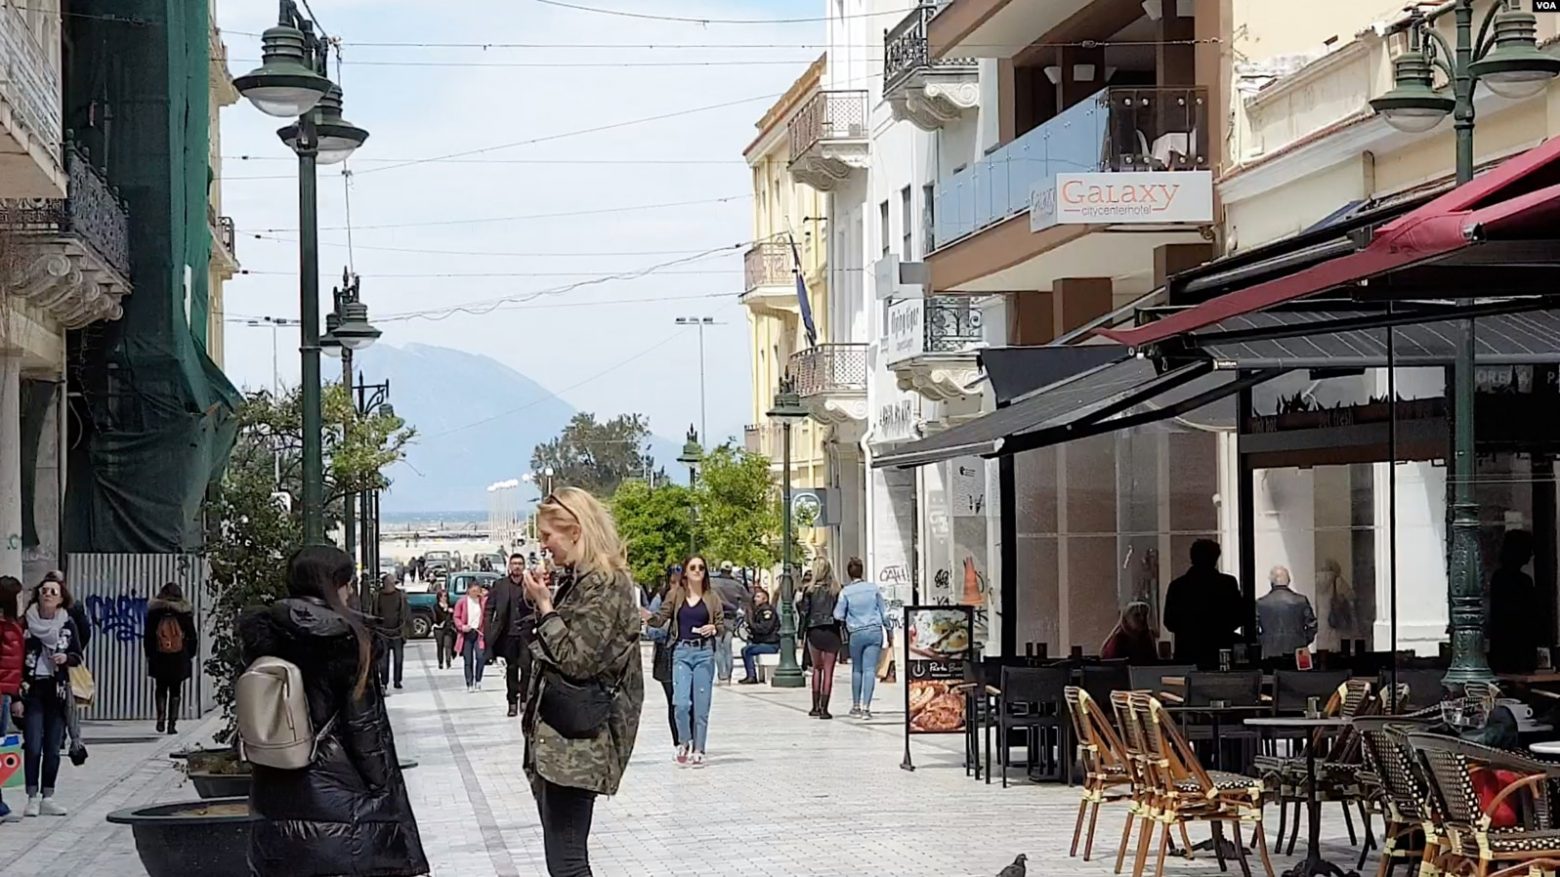 Αλβανικά ΜΜΕ: Το 61% των αλλοδαπών στην Ελλάδα είναι Αλβανοί - Φεύγουν τώρα για άλλες χώρες